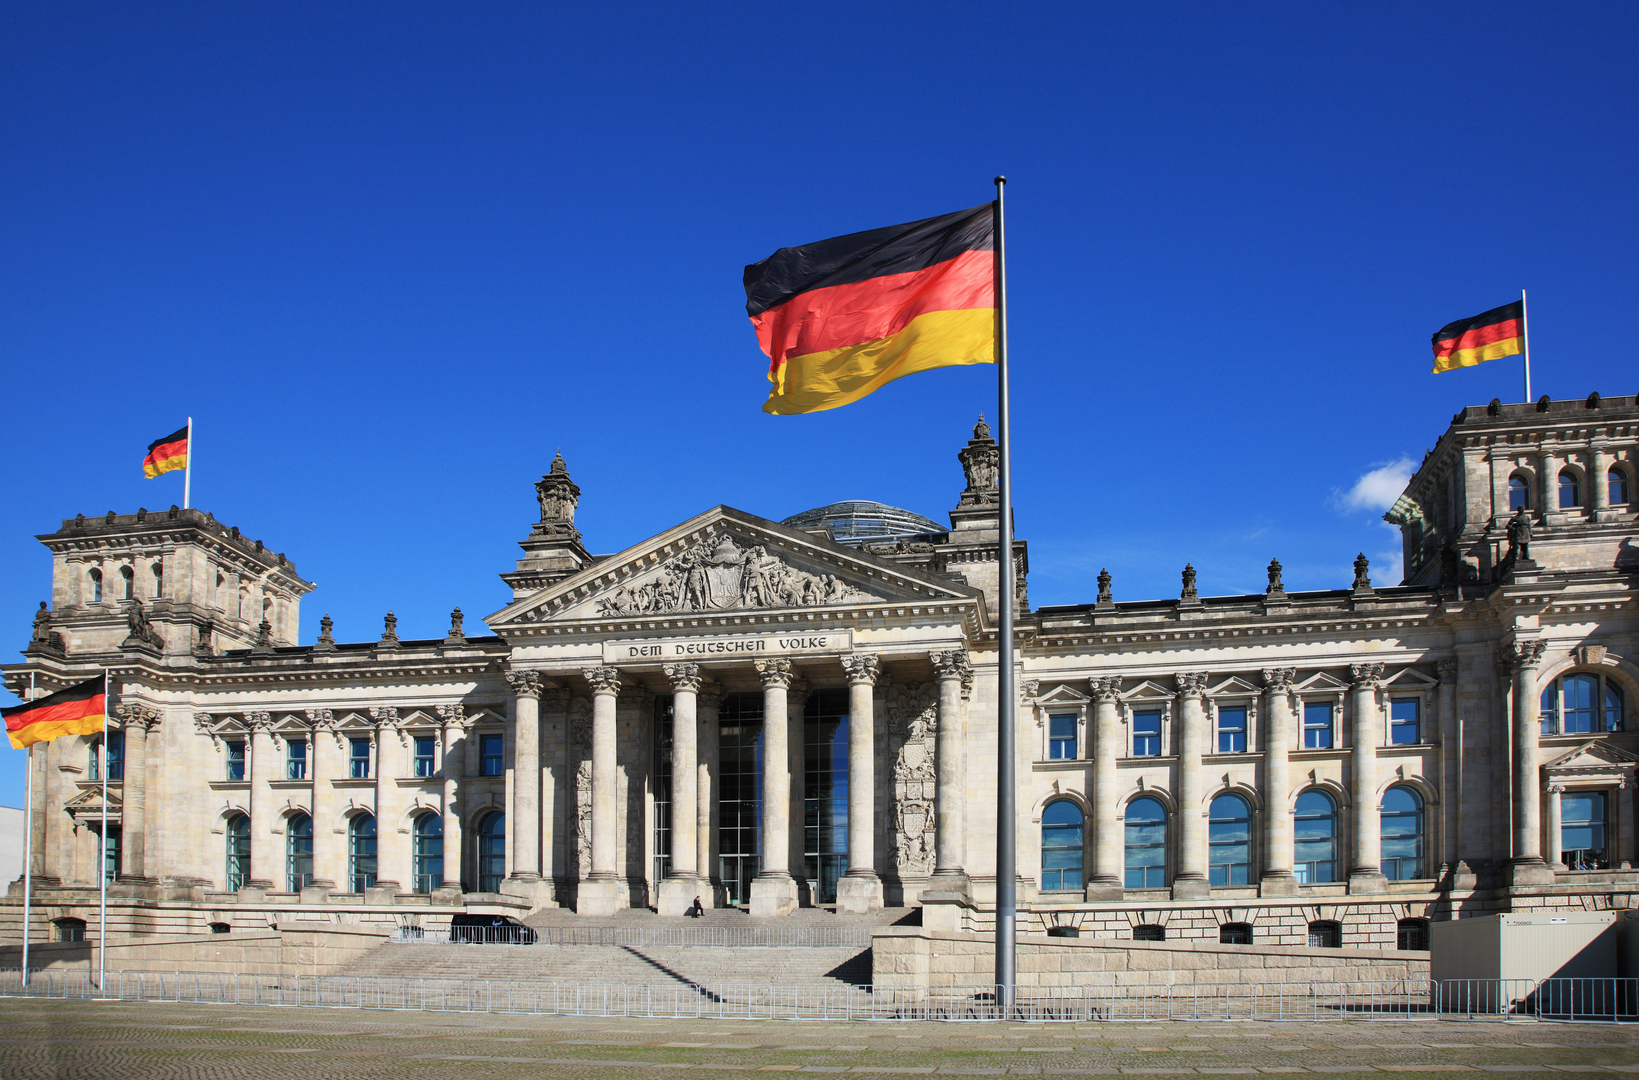 ألمانيا تخفف شروط الحصول على الجنسية